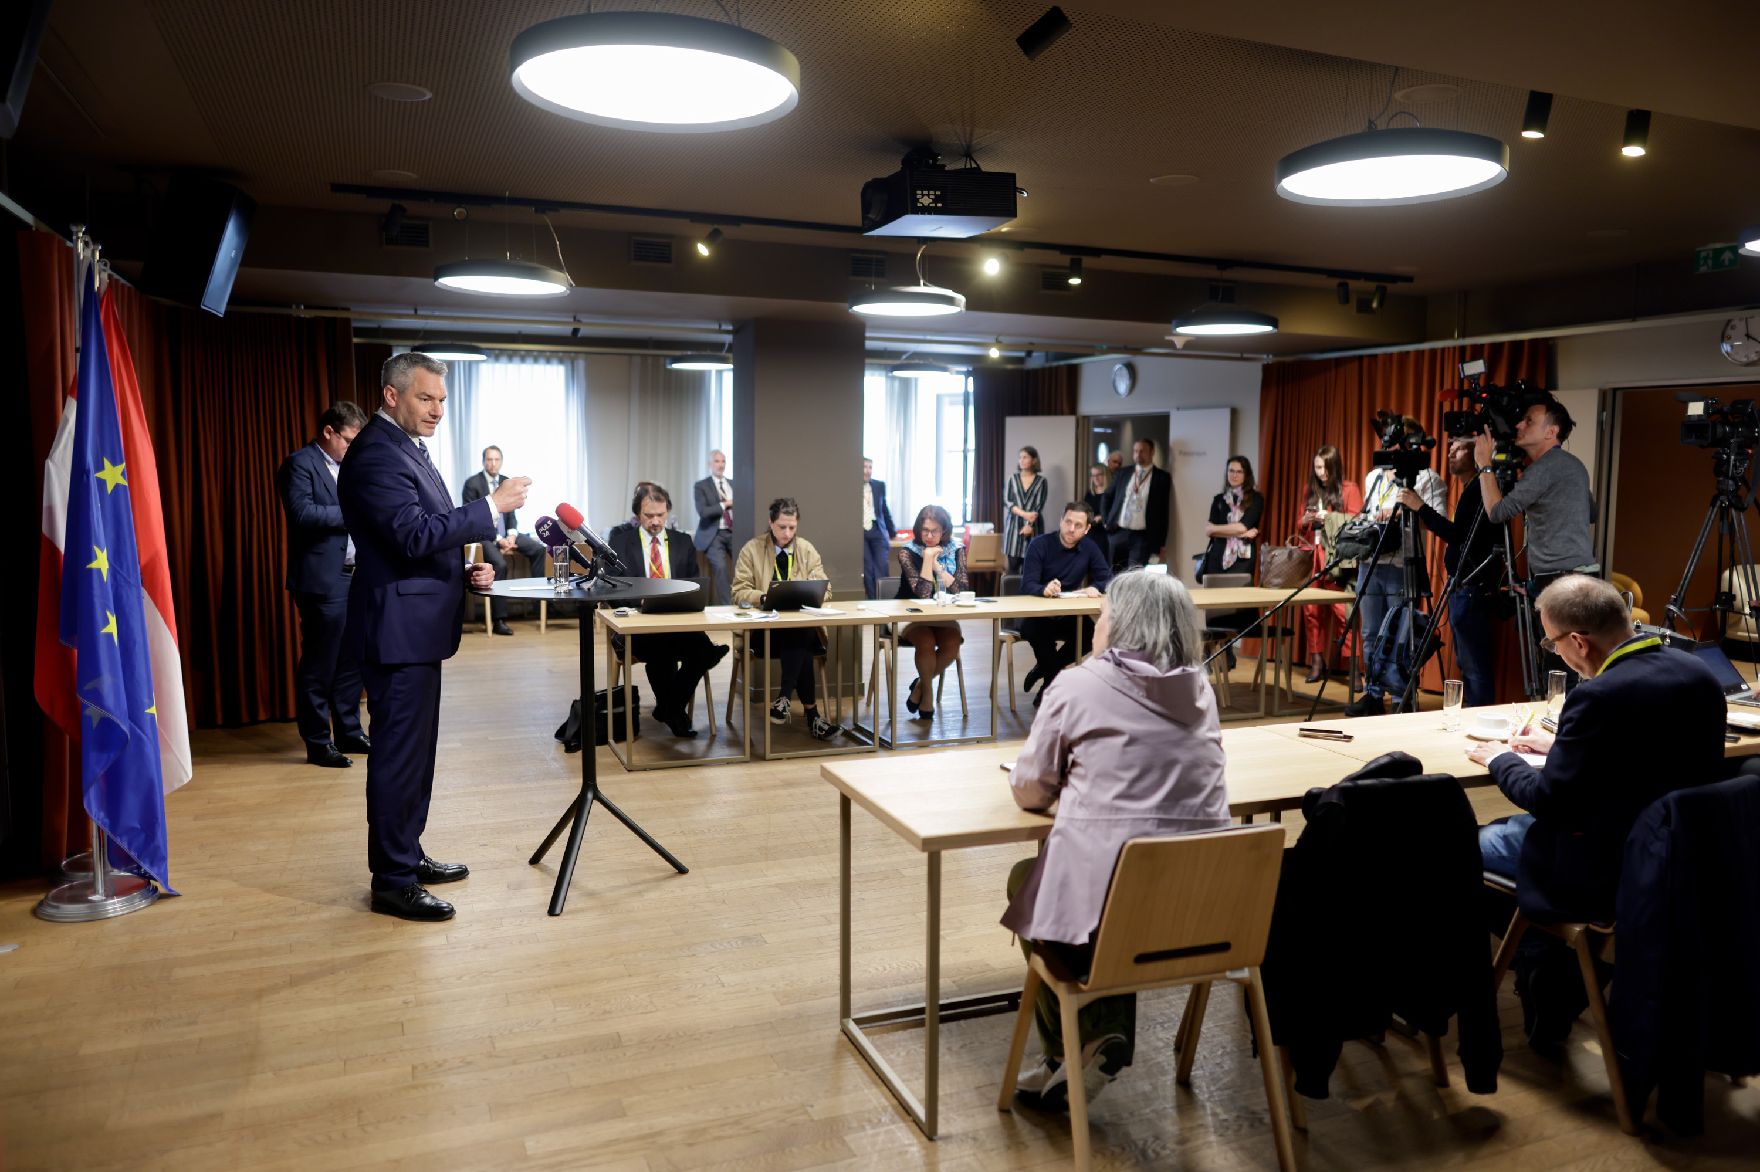 Am 30. Mai 2022 nahm Bundeskanzler Karl Nehammer am Europäischen Rat der Staats- und Regierungschefs teil. Im Bild beim Pressestatement vor dem Rat.